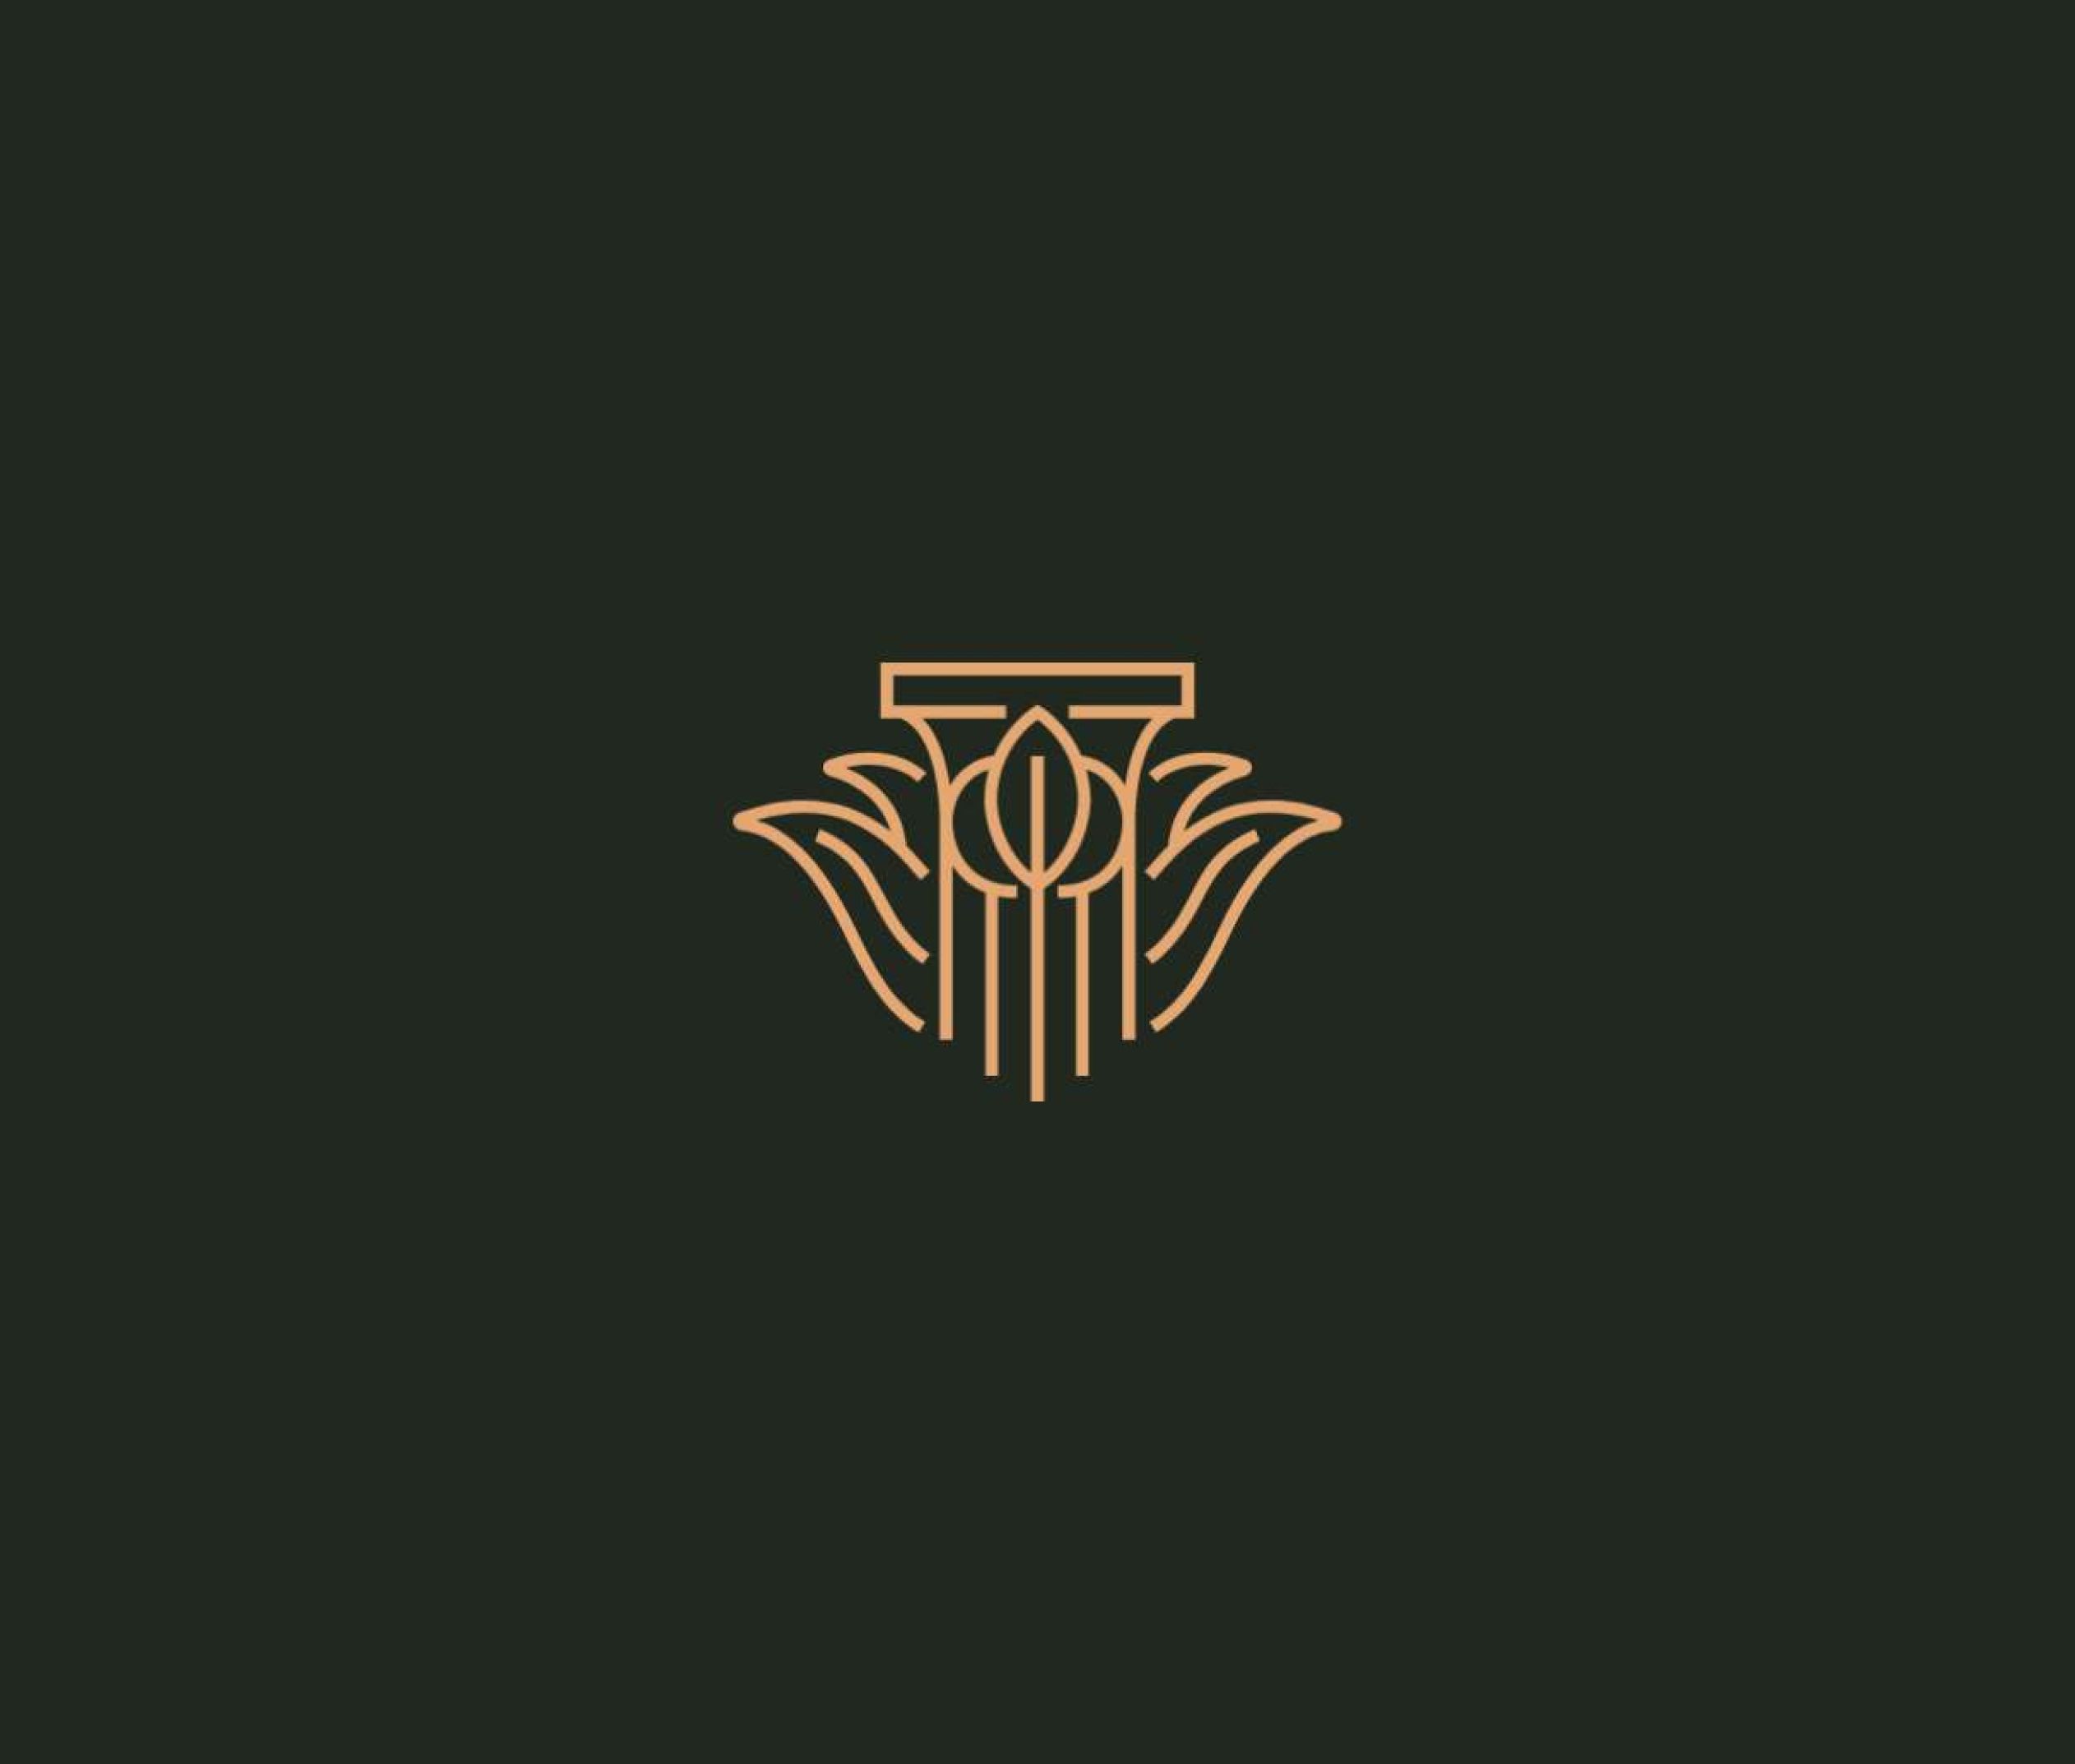 Palmehaven logo on dark green background